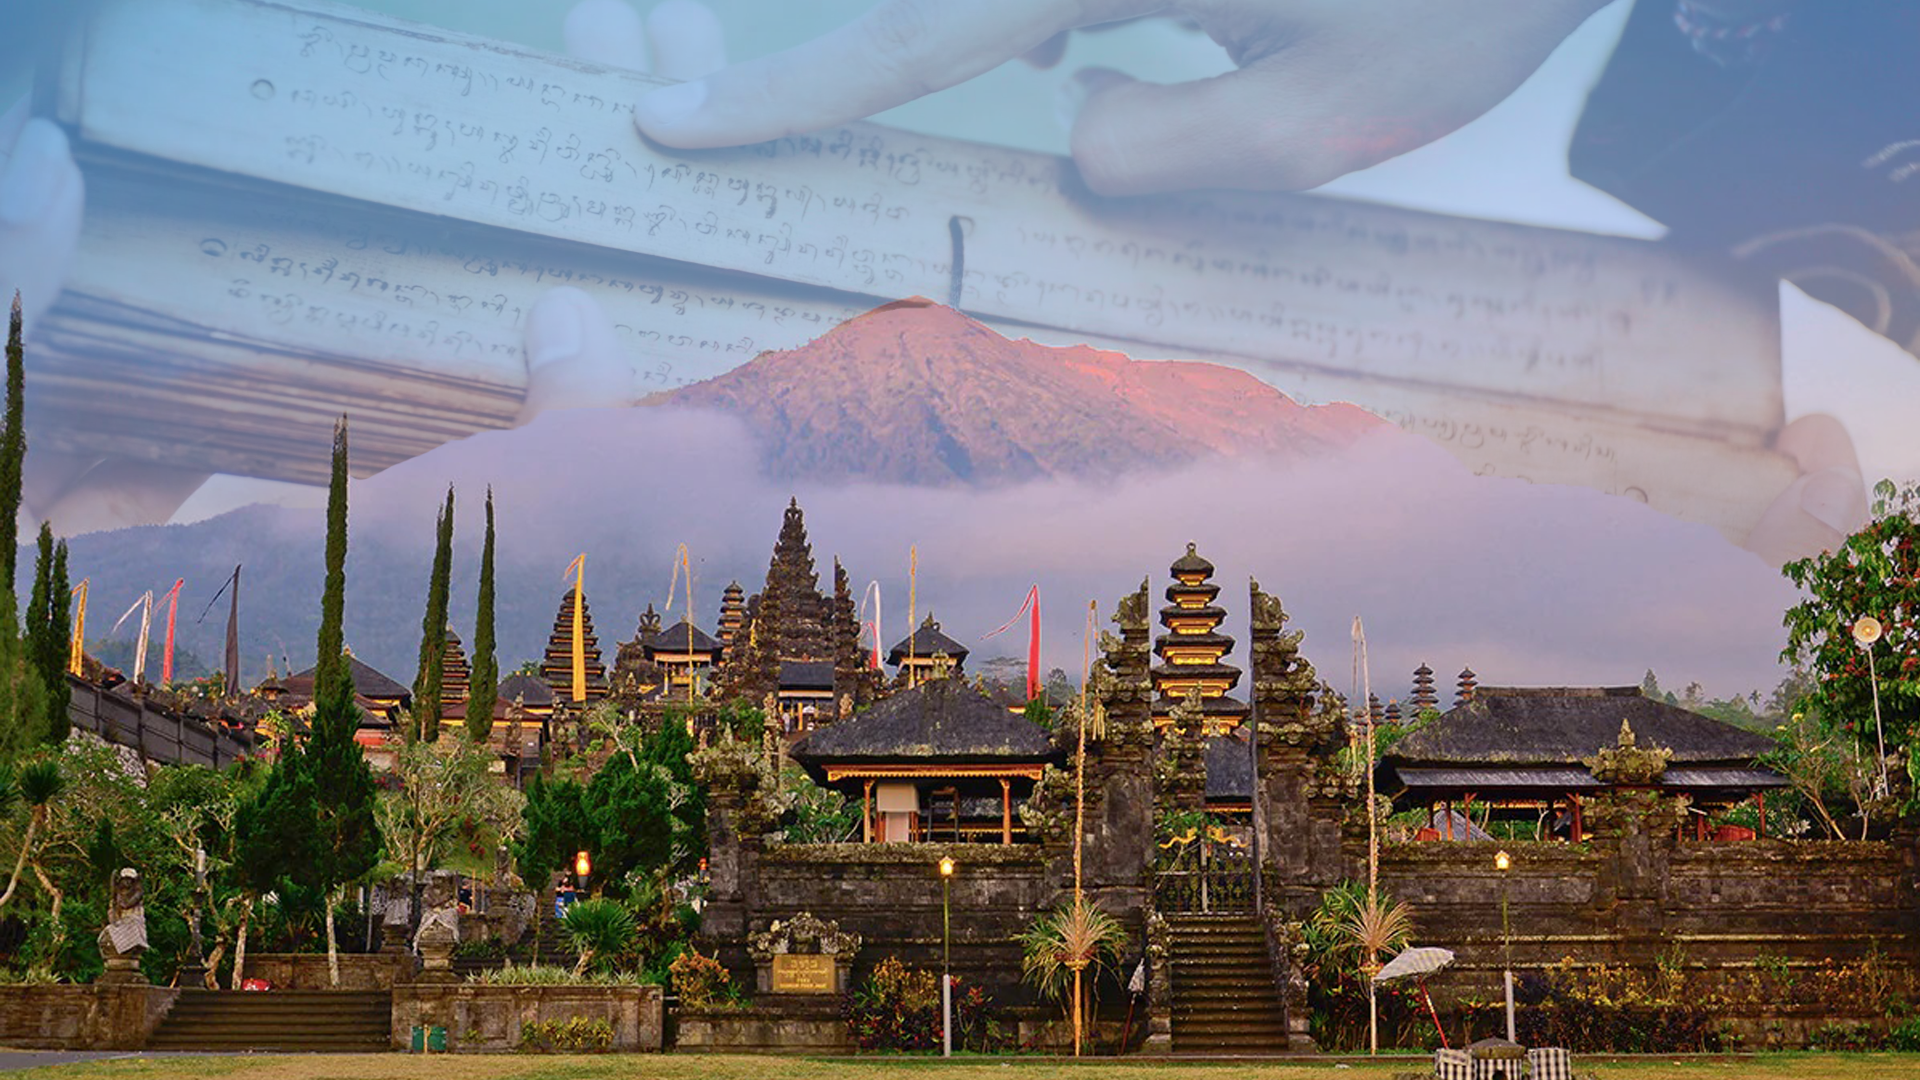 Balai Bahasa Bali Penyelenggaraan Kegiatan Pencerapan Kajian Kebahasaan dan Kesastraan